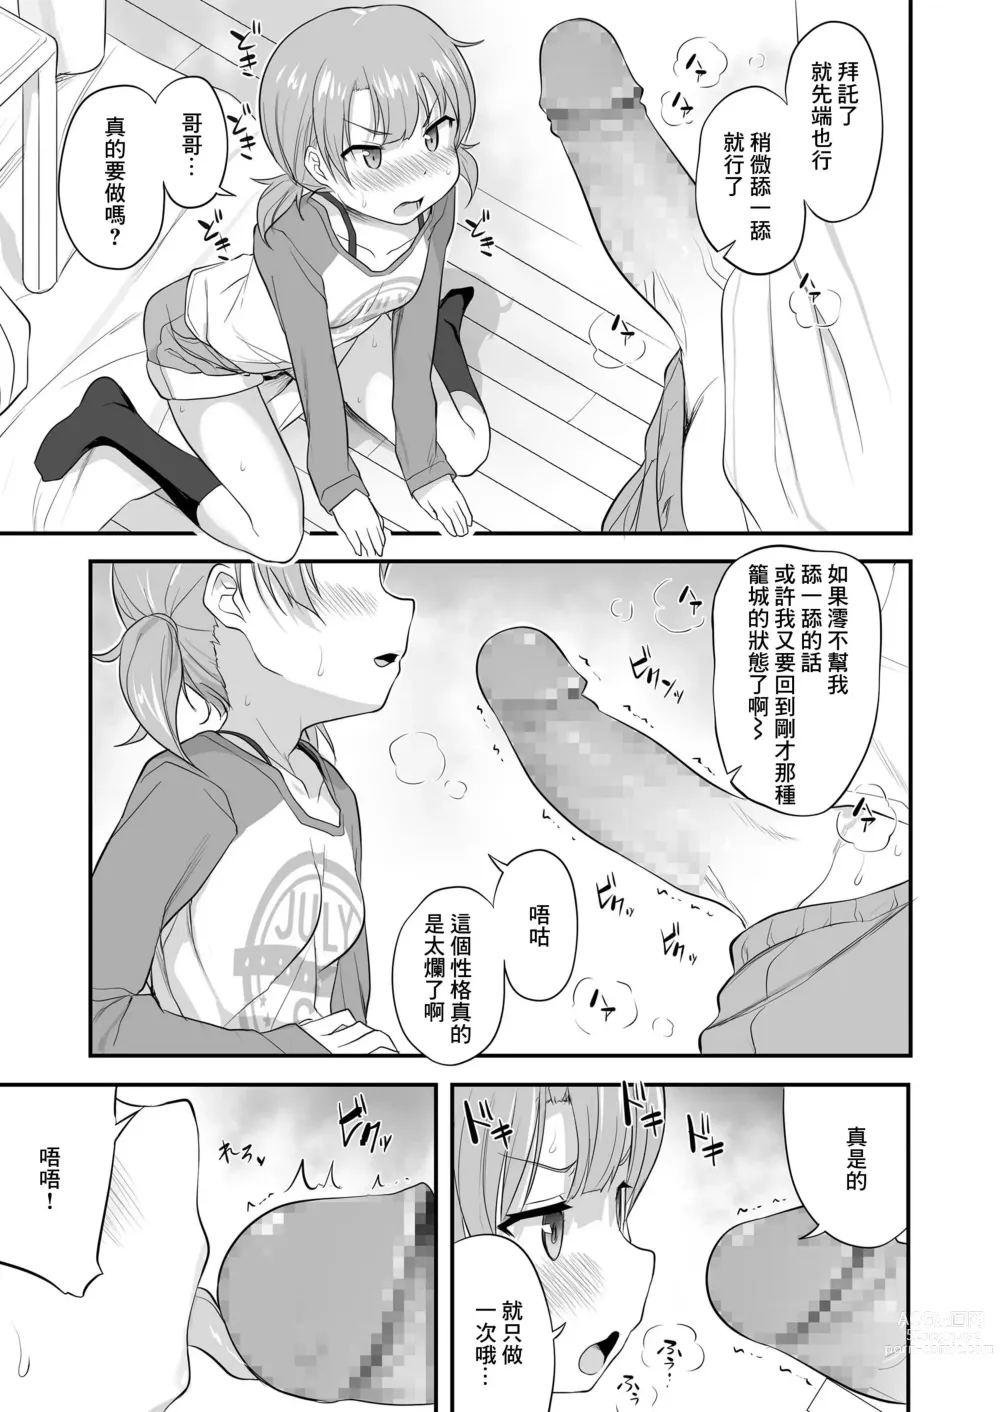 Page 7 of manga Imouto Gokoro to Haru no Sora